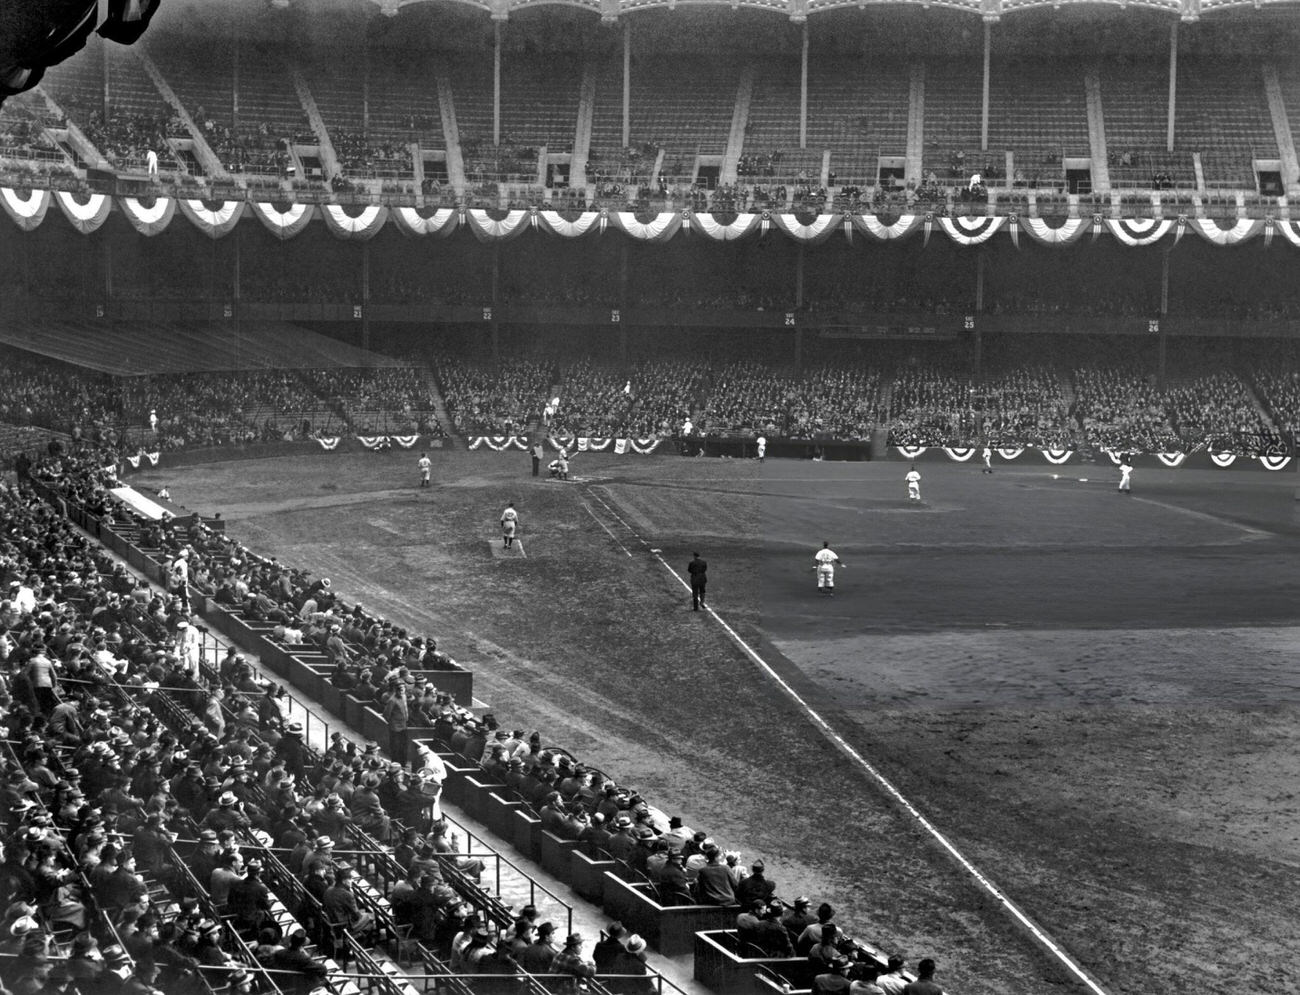 A Baseball Game Between The Yankees And Washington Senators At Yankee Stadium, 1940.